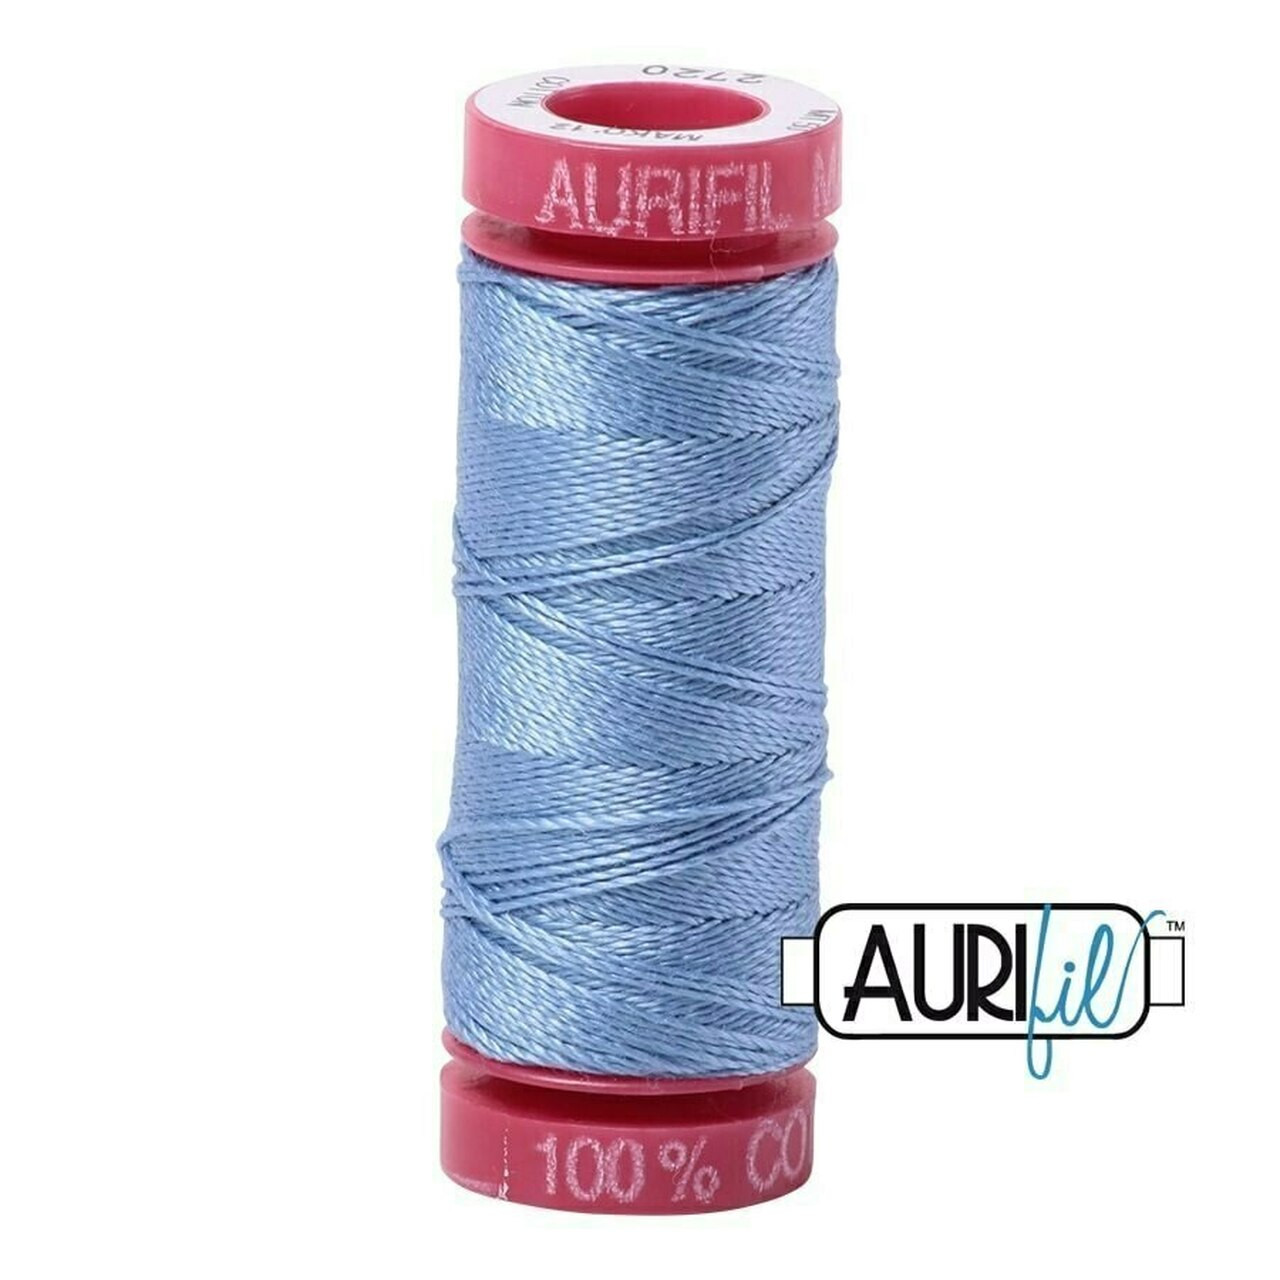 Aurifil 2720 - Light Delft Blue